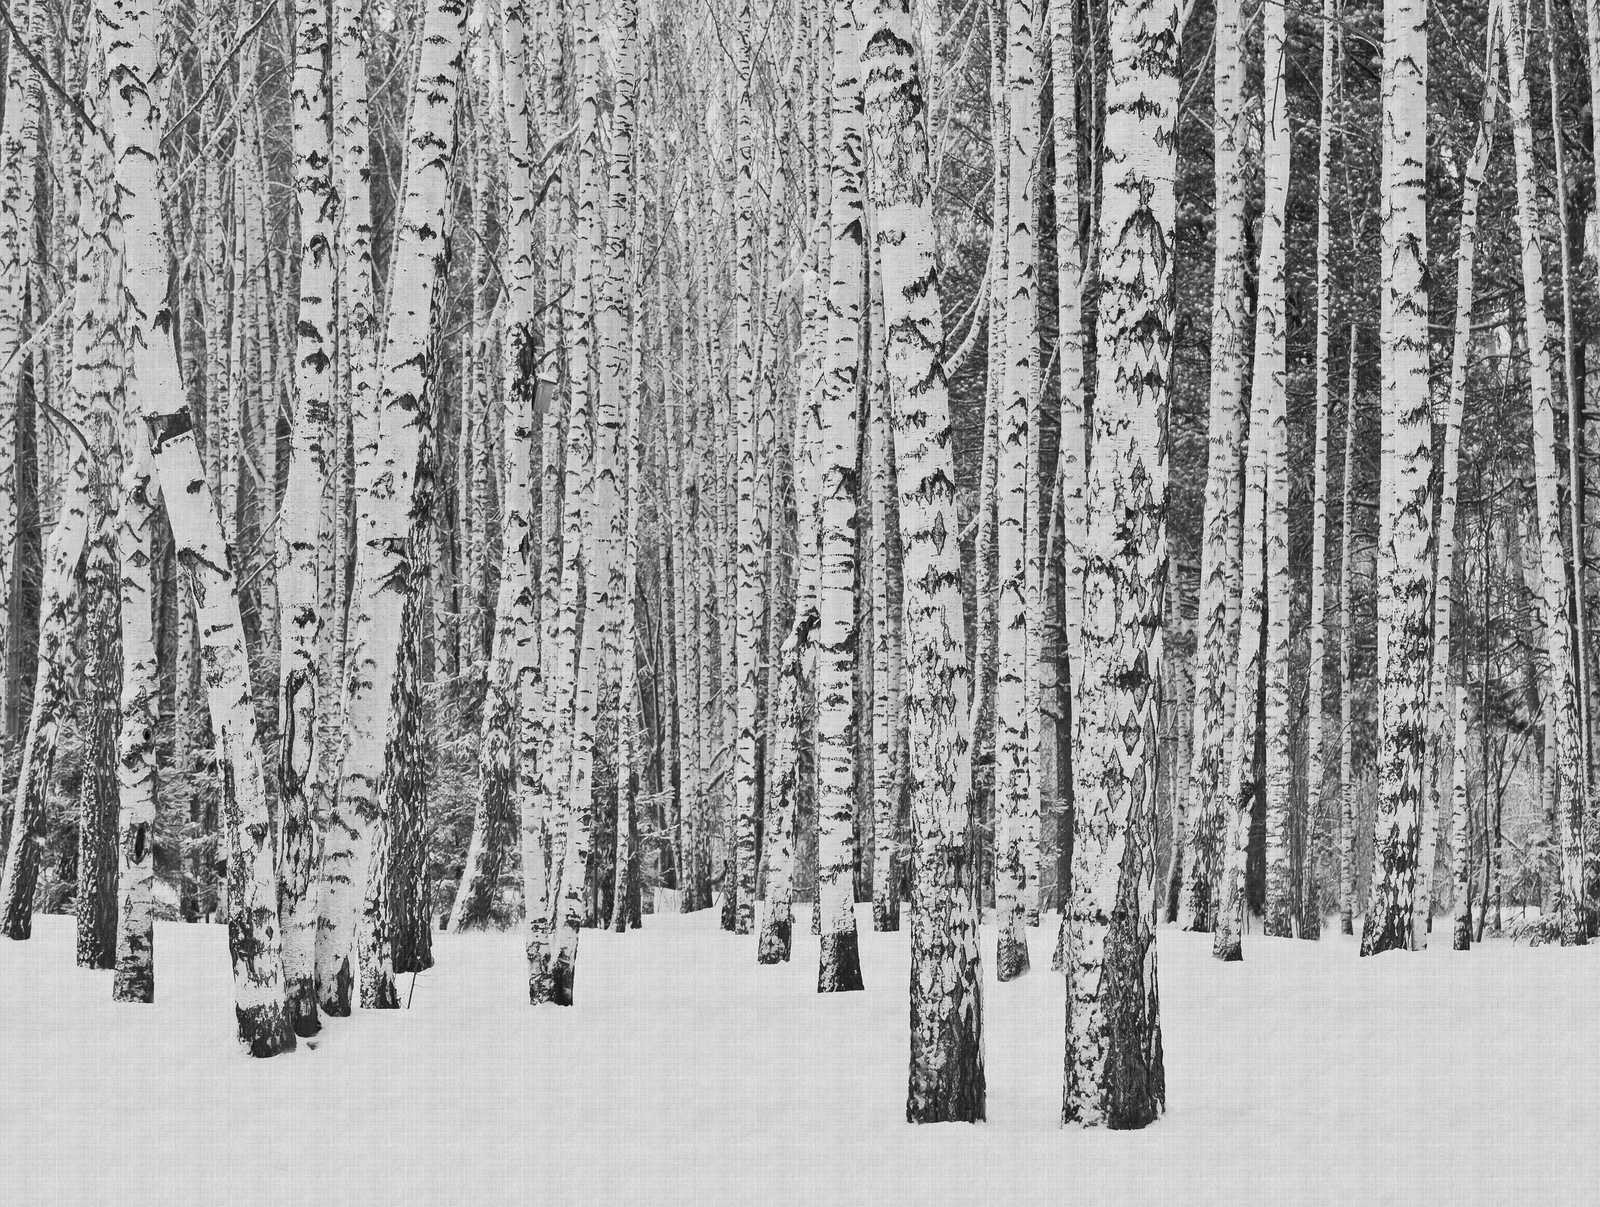             Papier peint Nouveauté | papier peint à motifs forêt de bouleaux dans la neige, noir et blanc
        